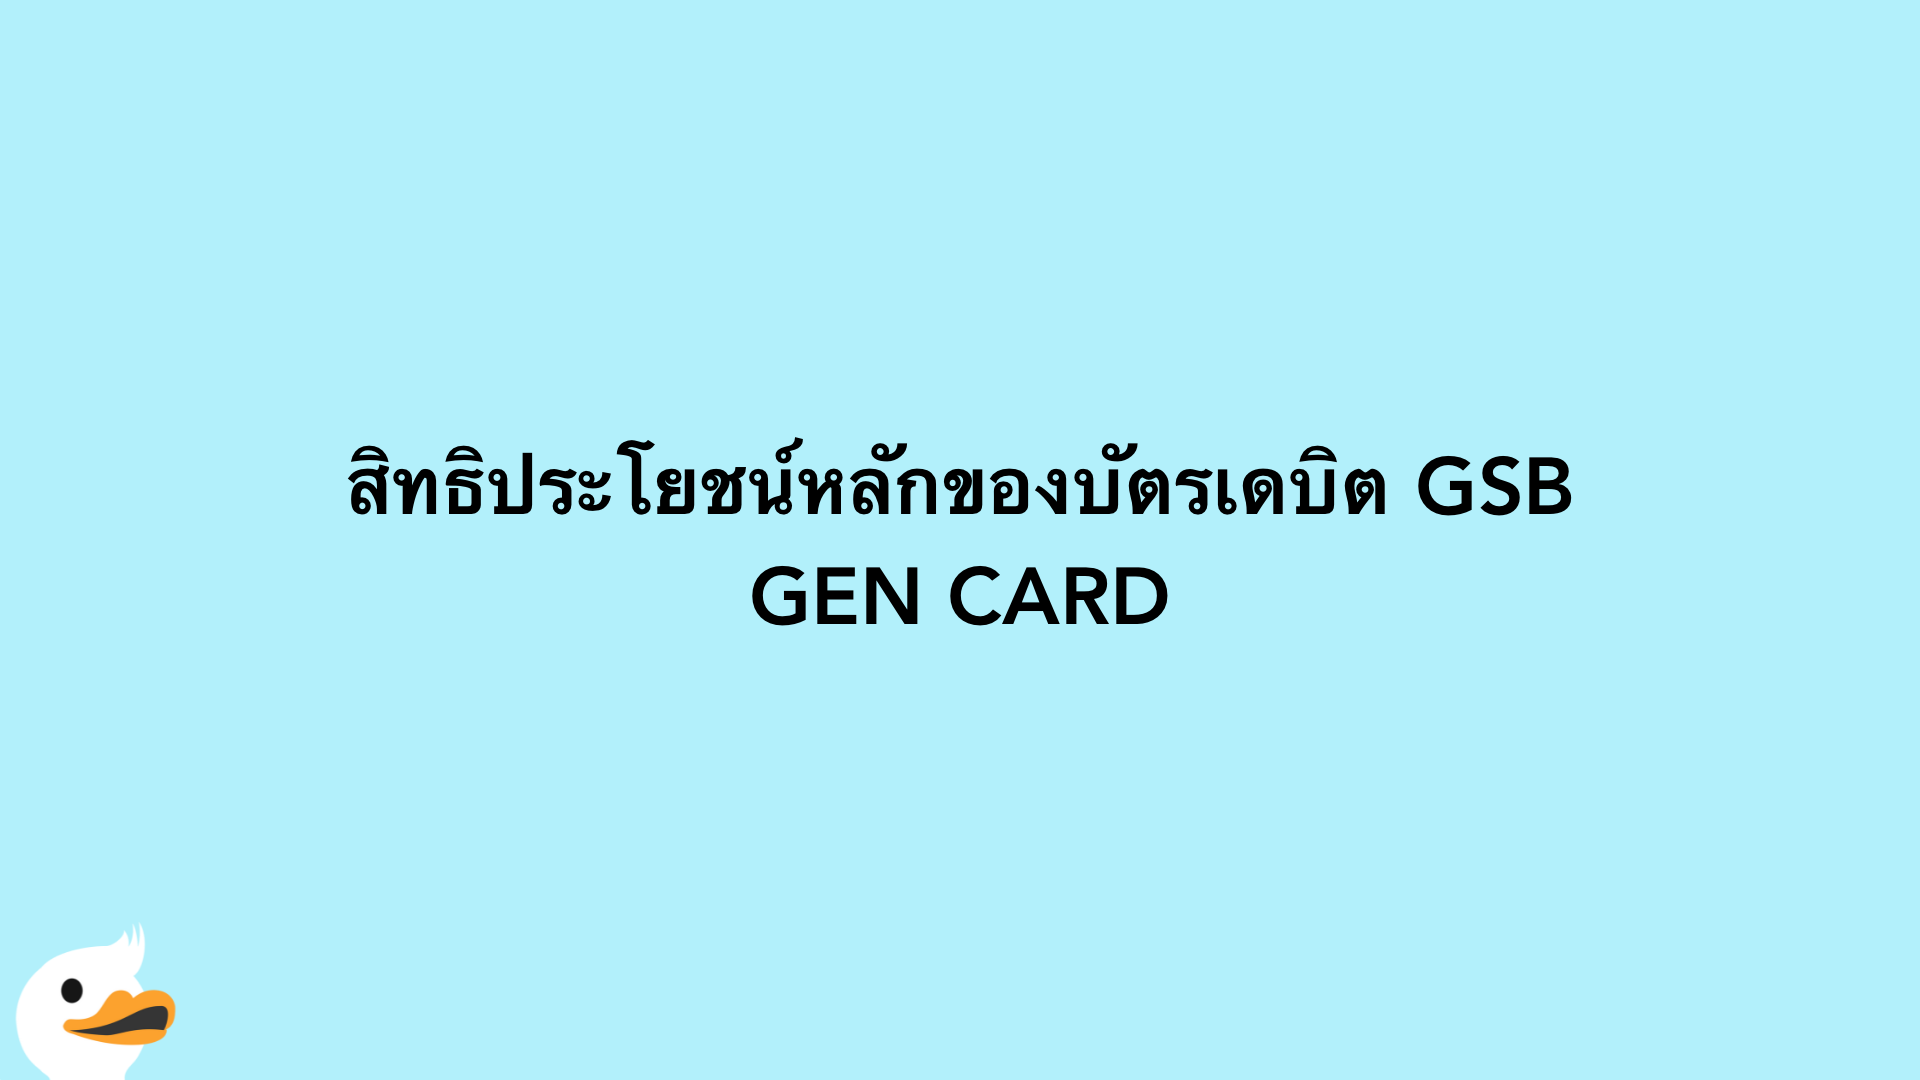 สิทธิประโยชน์หลักของบัตรเดบิต GSB GEN CARD